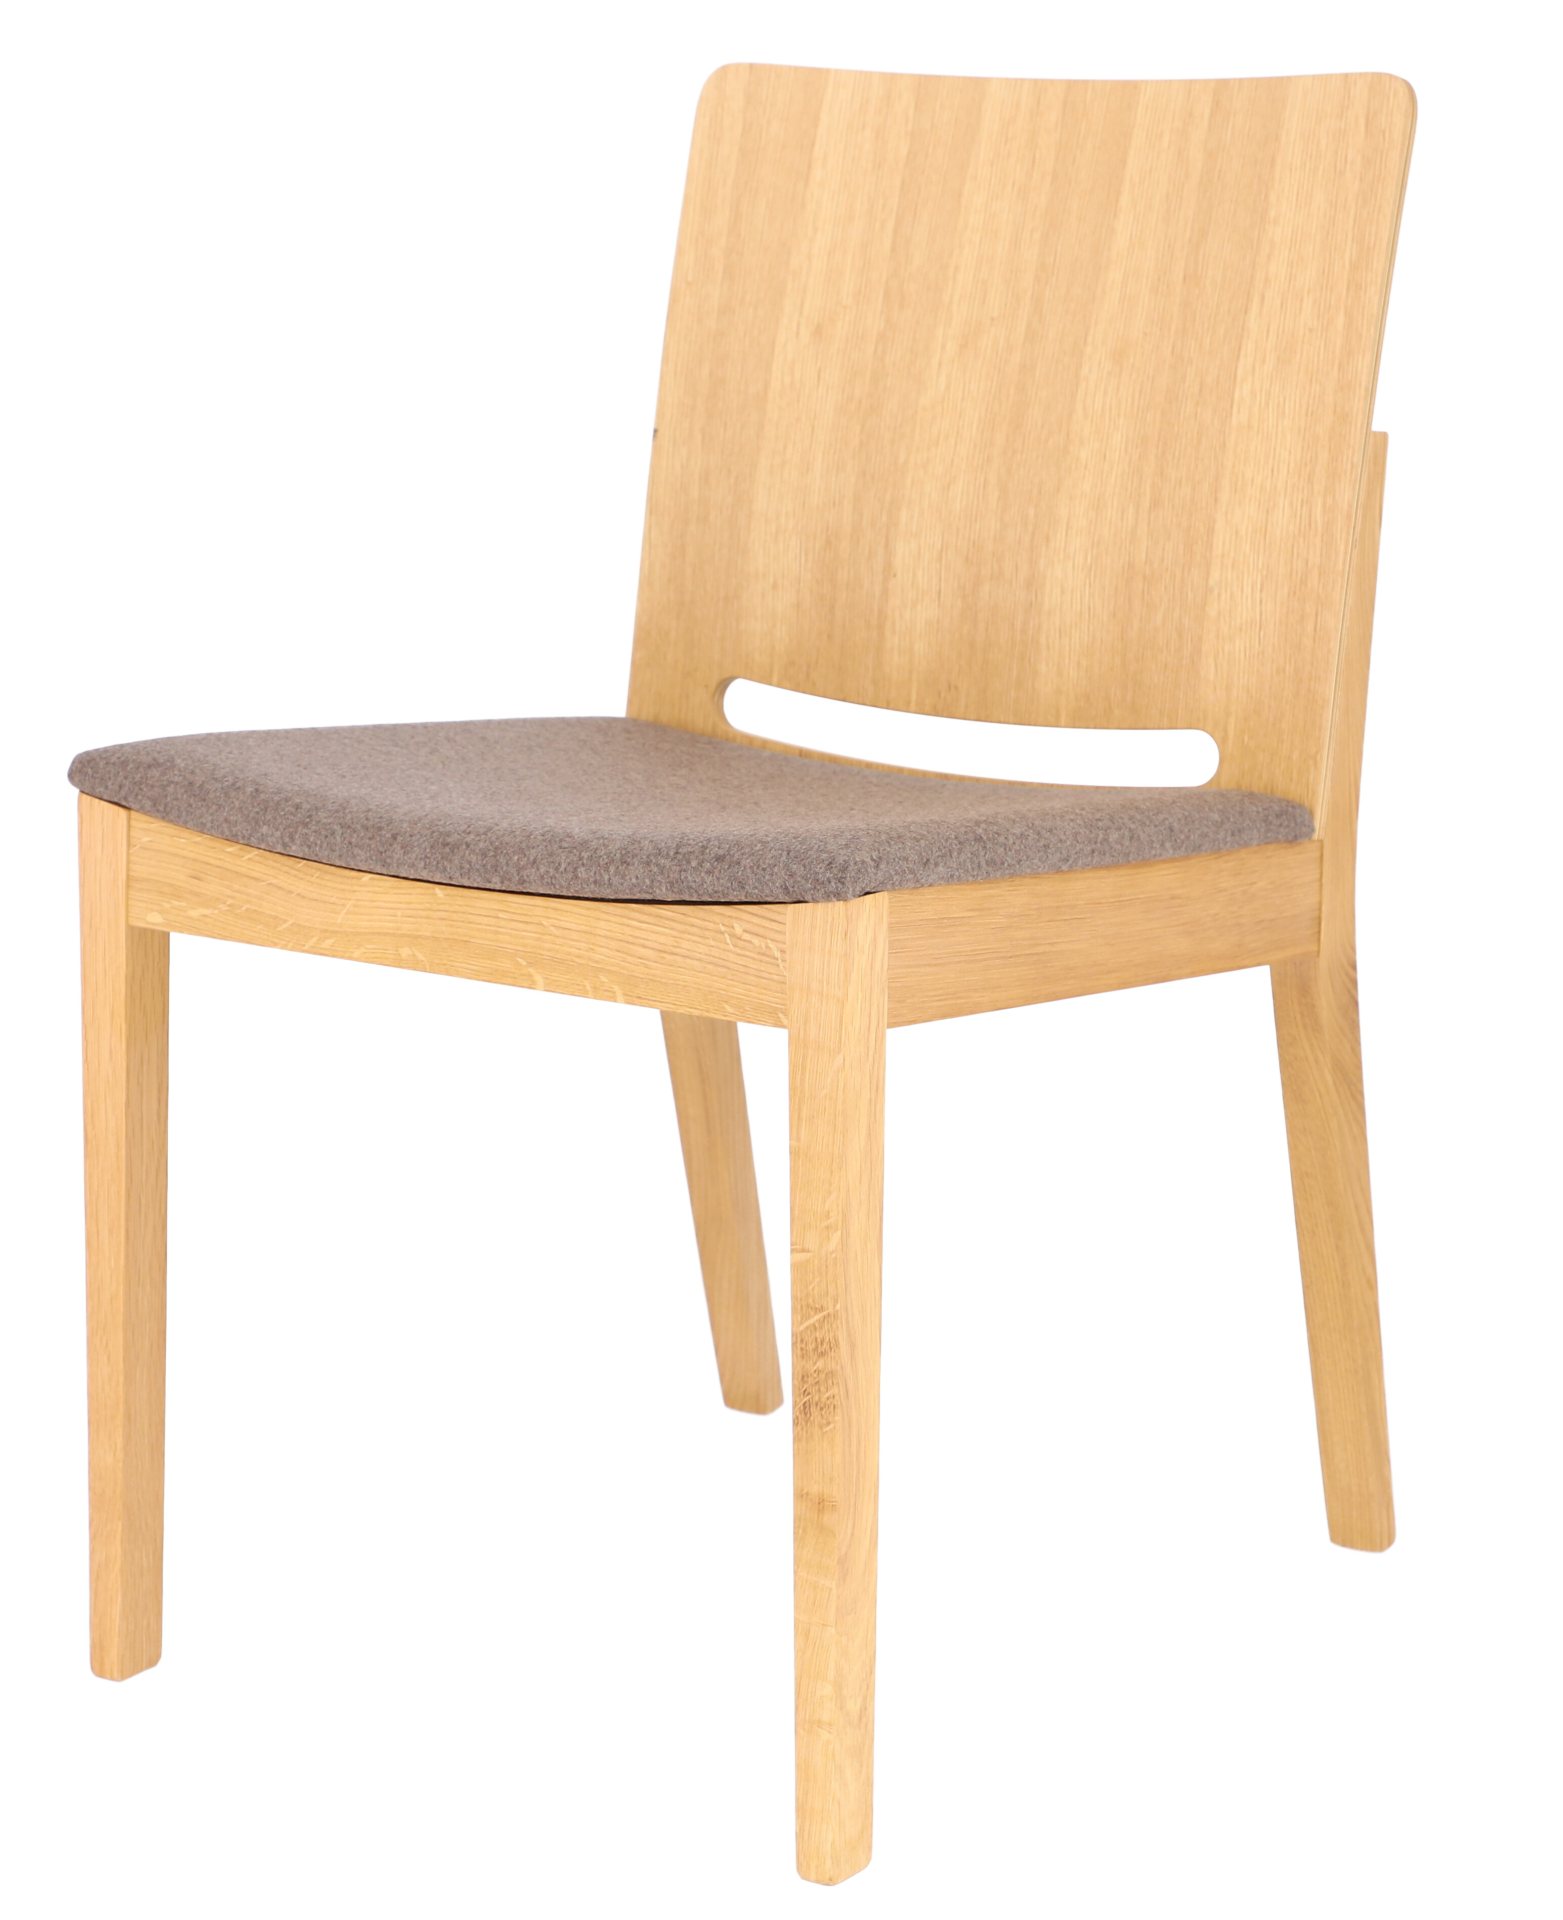 Der Esszimmerstuhl Kelley wurde aus massiver Eiche gefertigt, die Sitzfläche wurde aus Wolle hergestellt. Designet wurde der Tisch von der Marke Jan Kurtz.